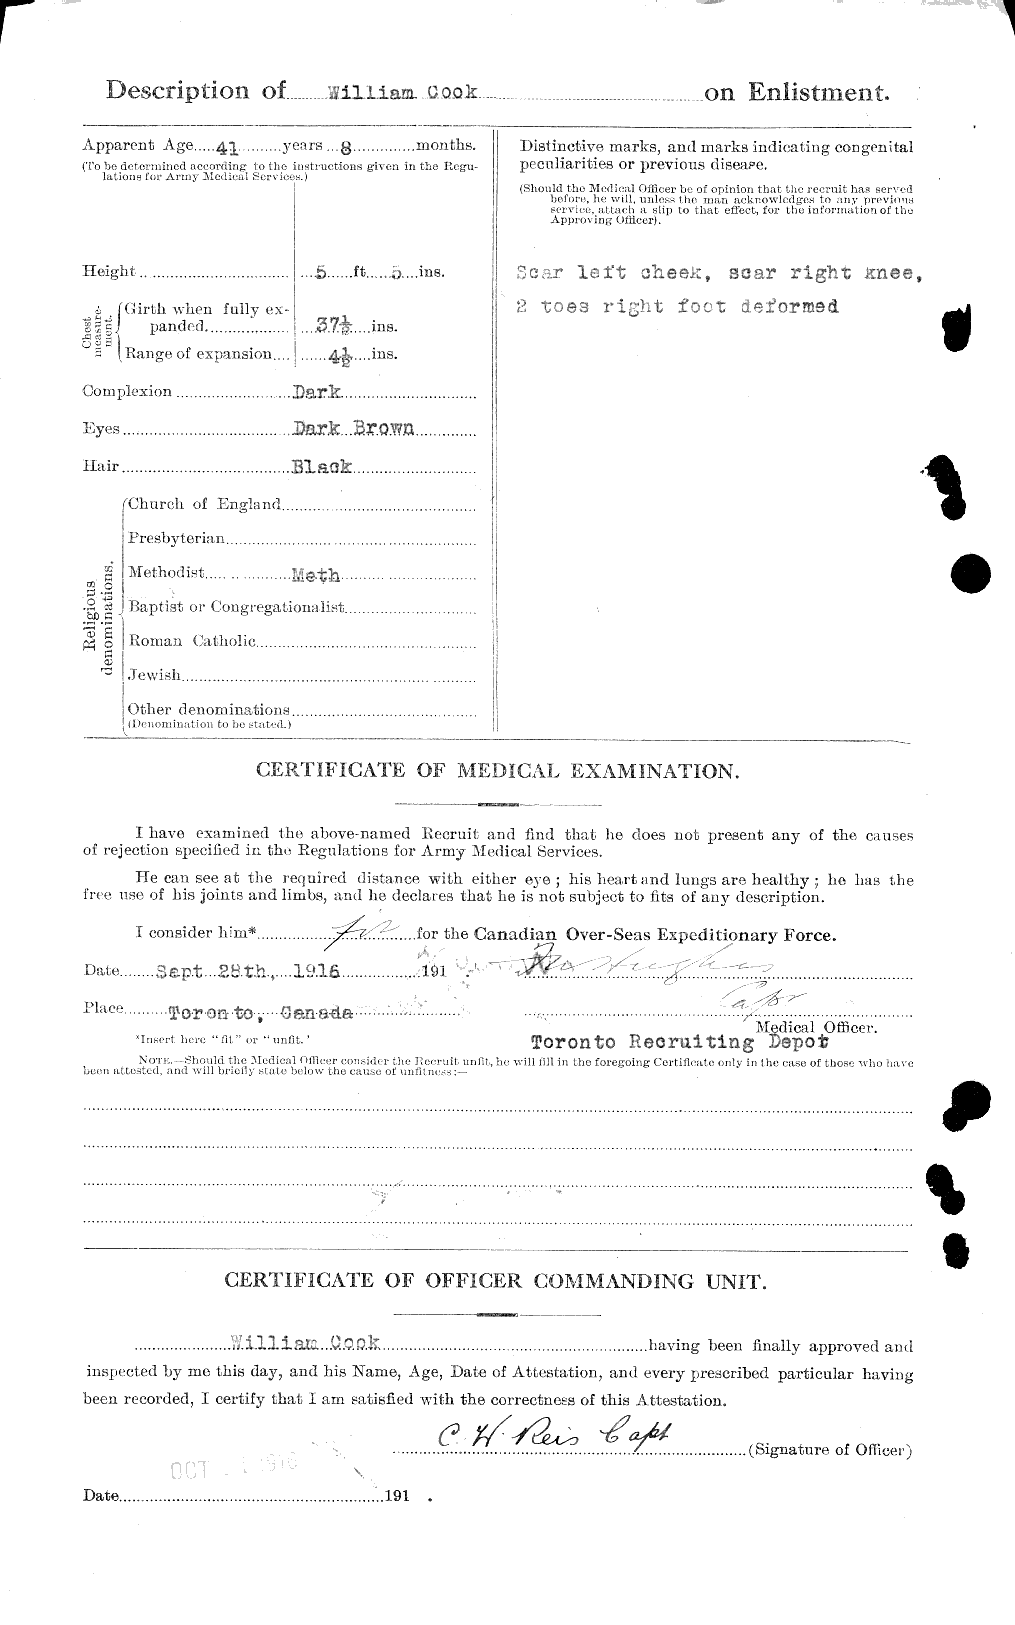 Dossiers du Personnel de la Première Guerre mondiale - CEC 039115b